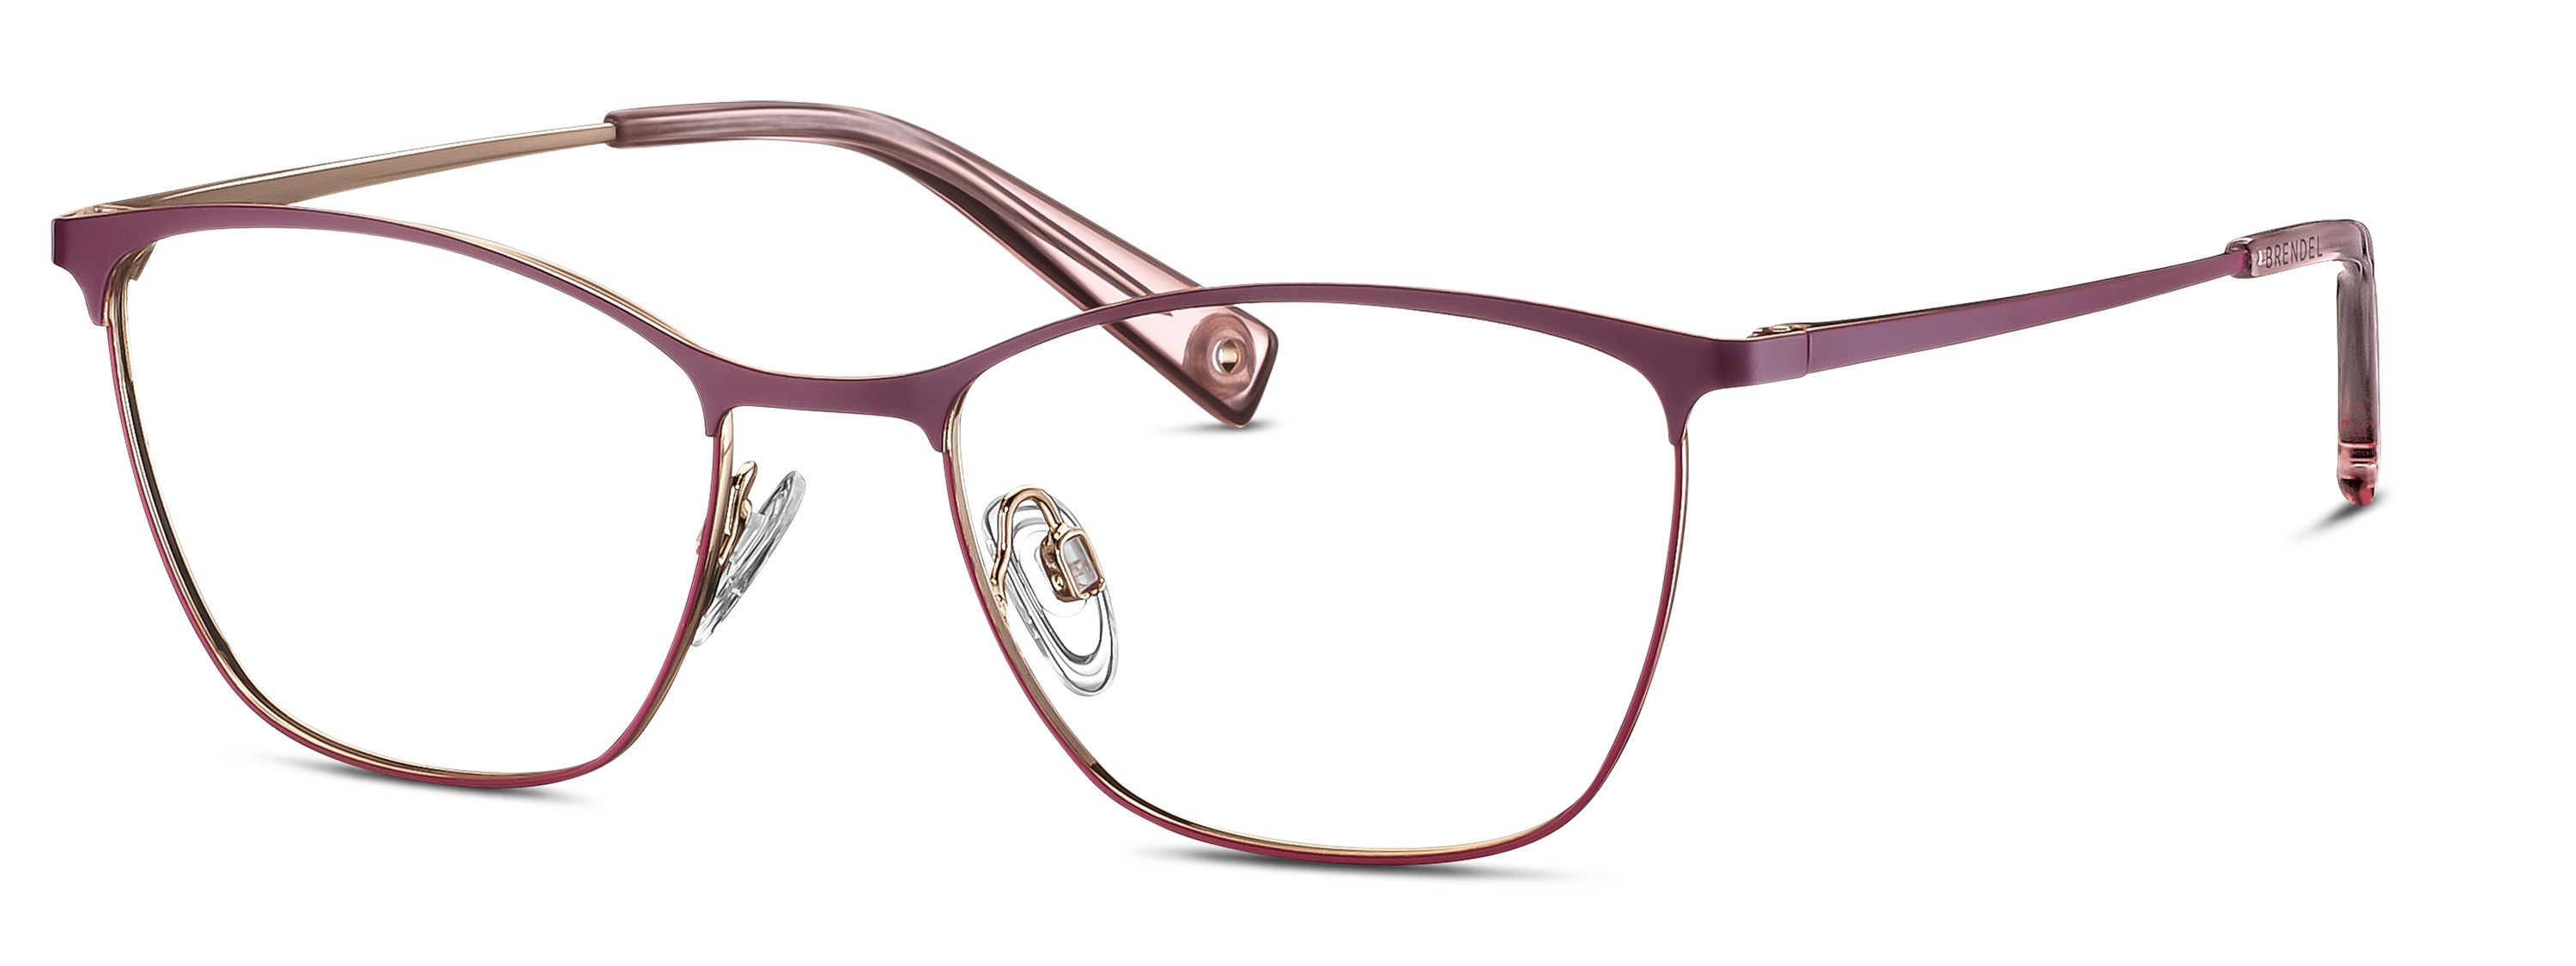 BRENDEL eyewear - 902355-50